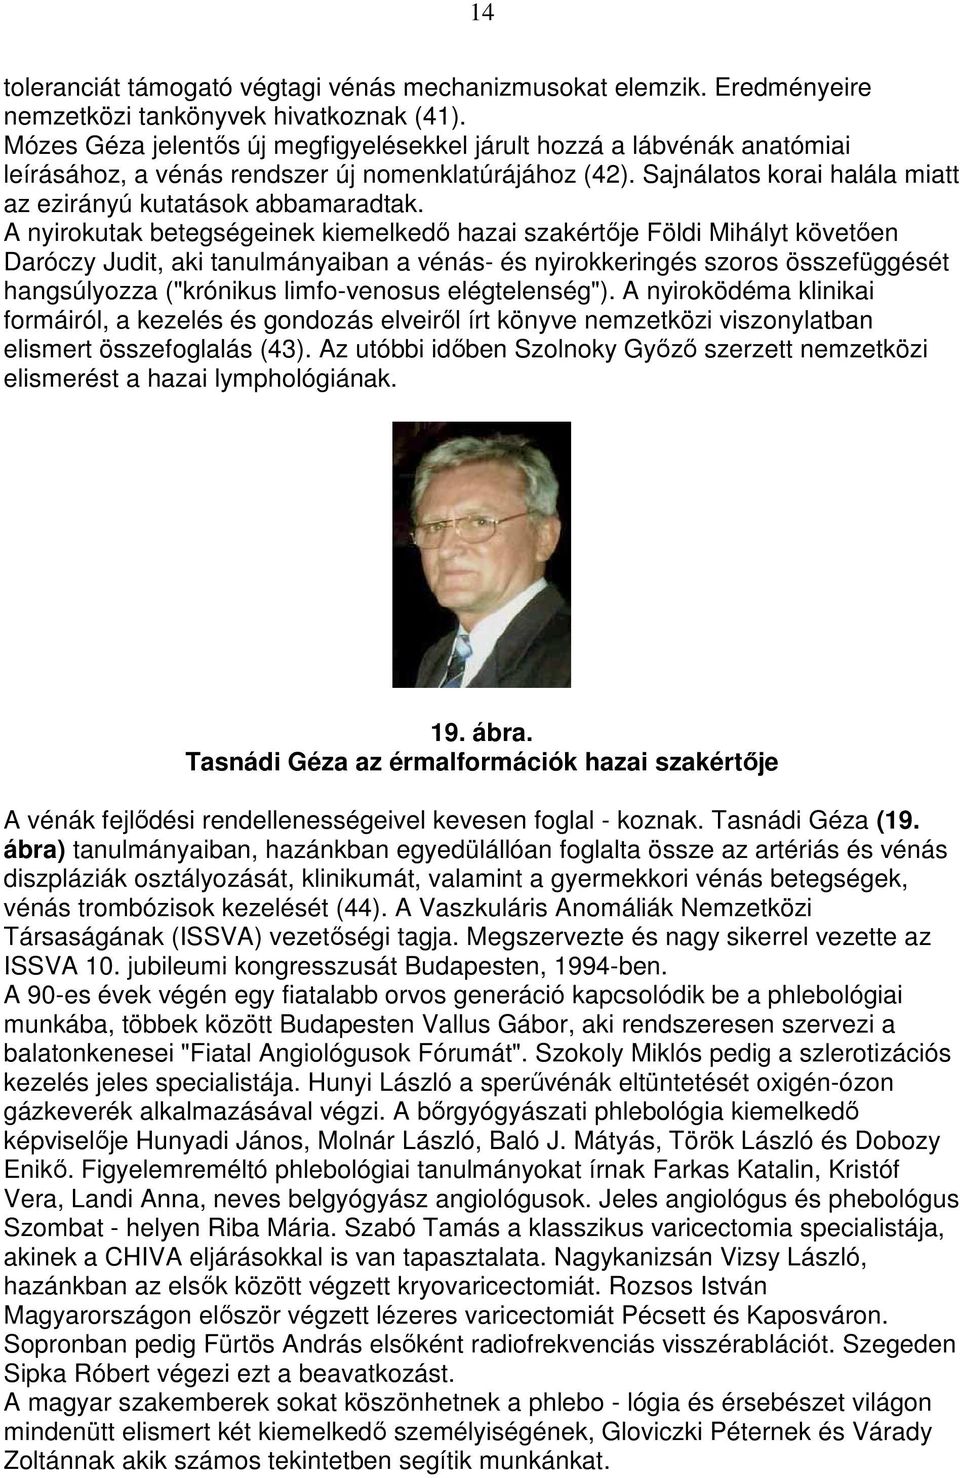 A nyirokutak betegségeinek kiemelkedı hazai szakértıje Földi Mihályt követıen Daróczy Judit, aki tanulmányaiban a vénás- és nyirokkeringés szoros összefüggését hangsúlyozza ("krónikus limfo-venosus